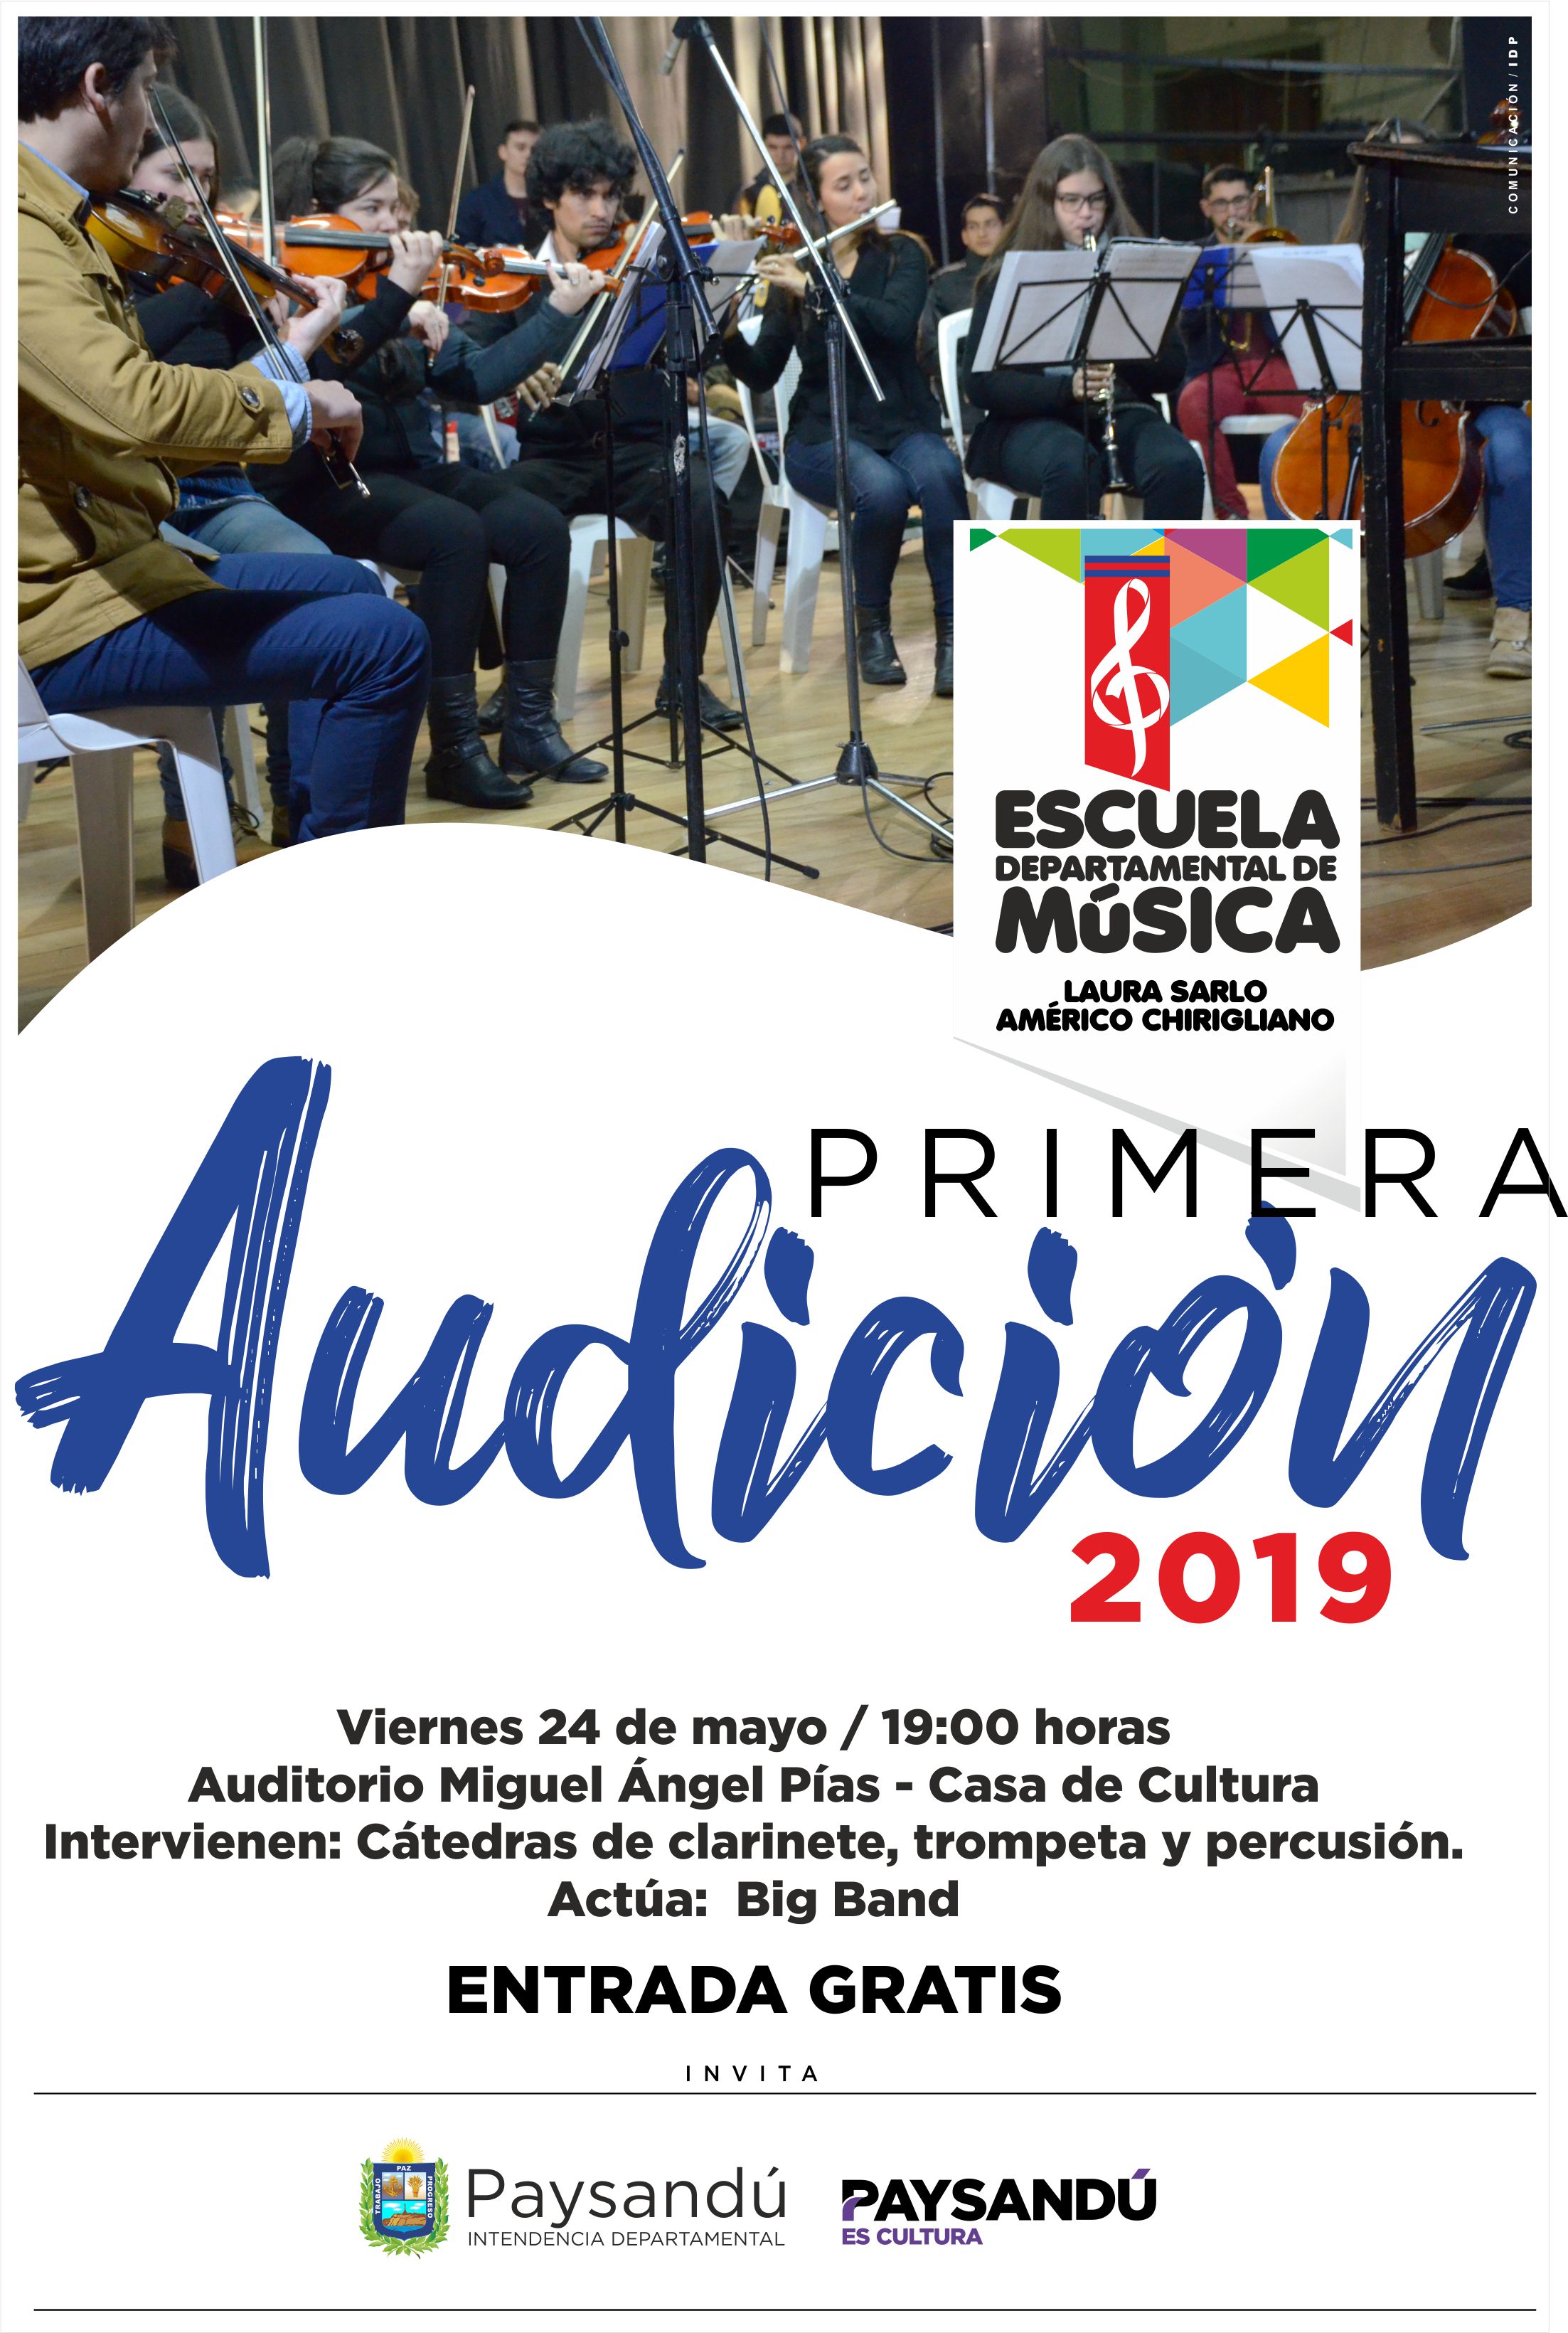 Escuela de musica primera audicion 2019